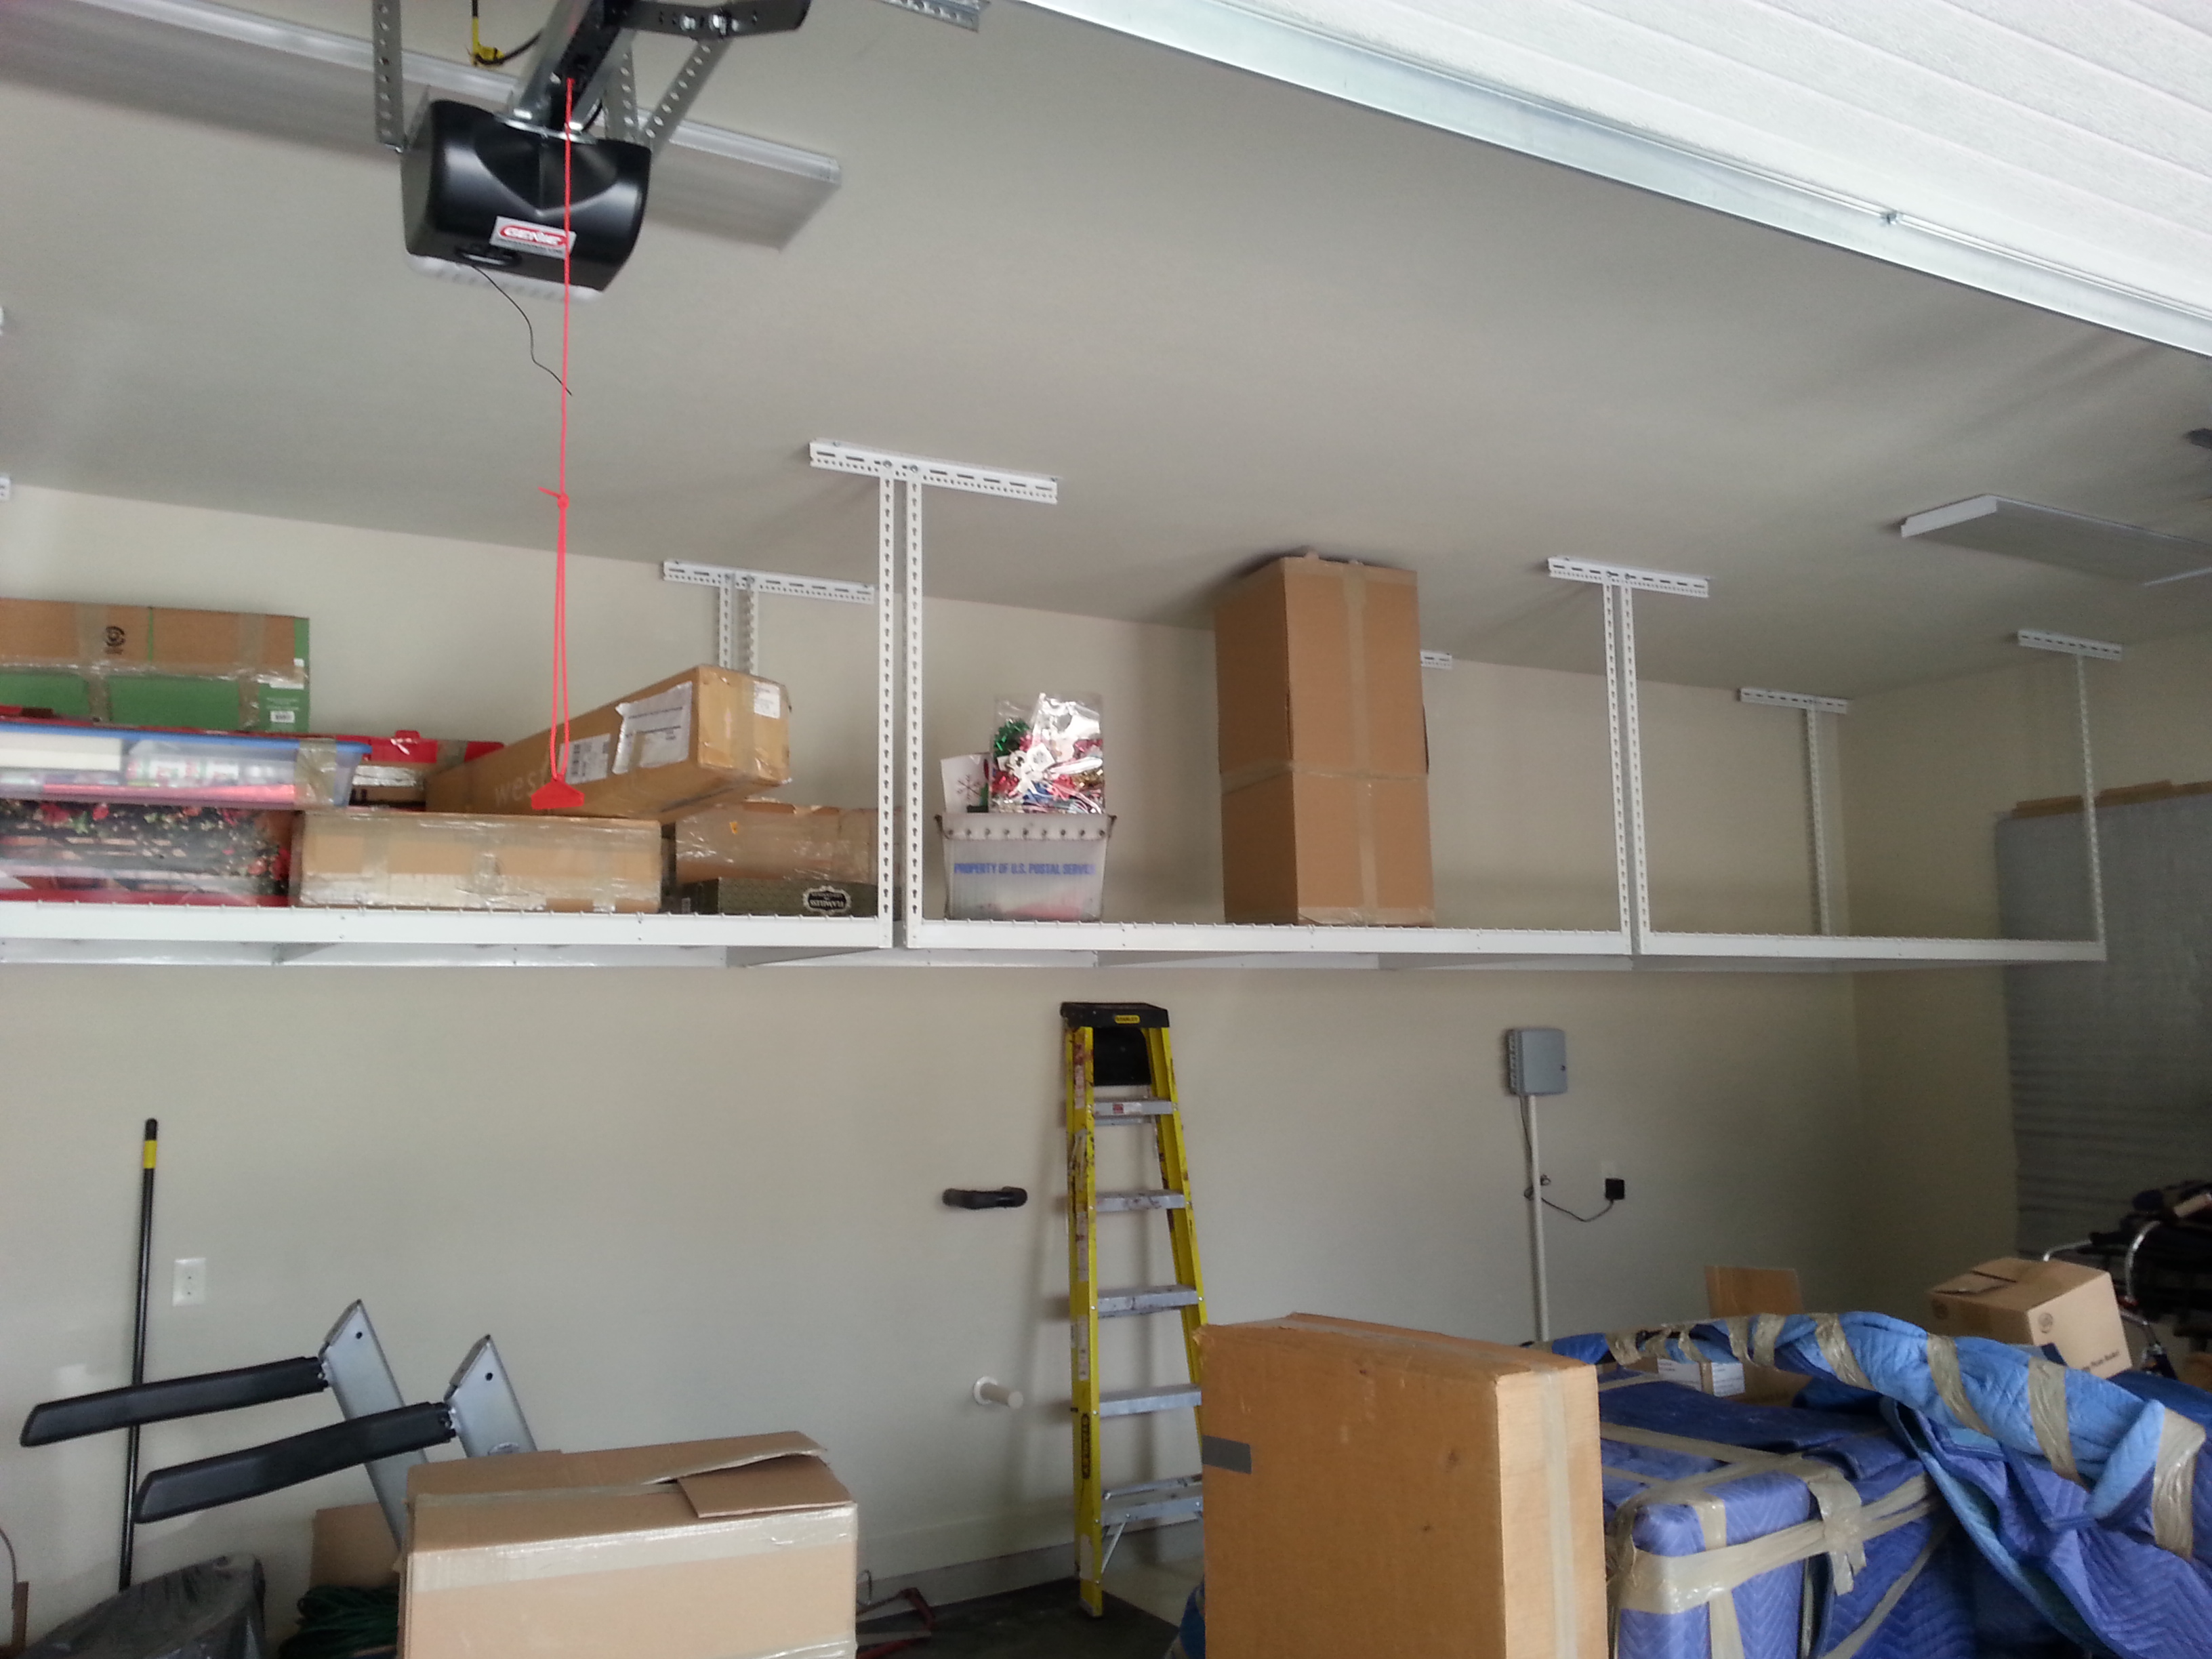 Saferacks Overhead Garage Storage Combo Kit Two 4 Ft X 8 Ft Racks